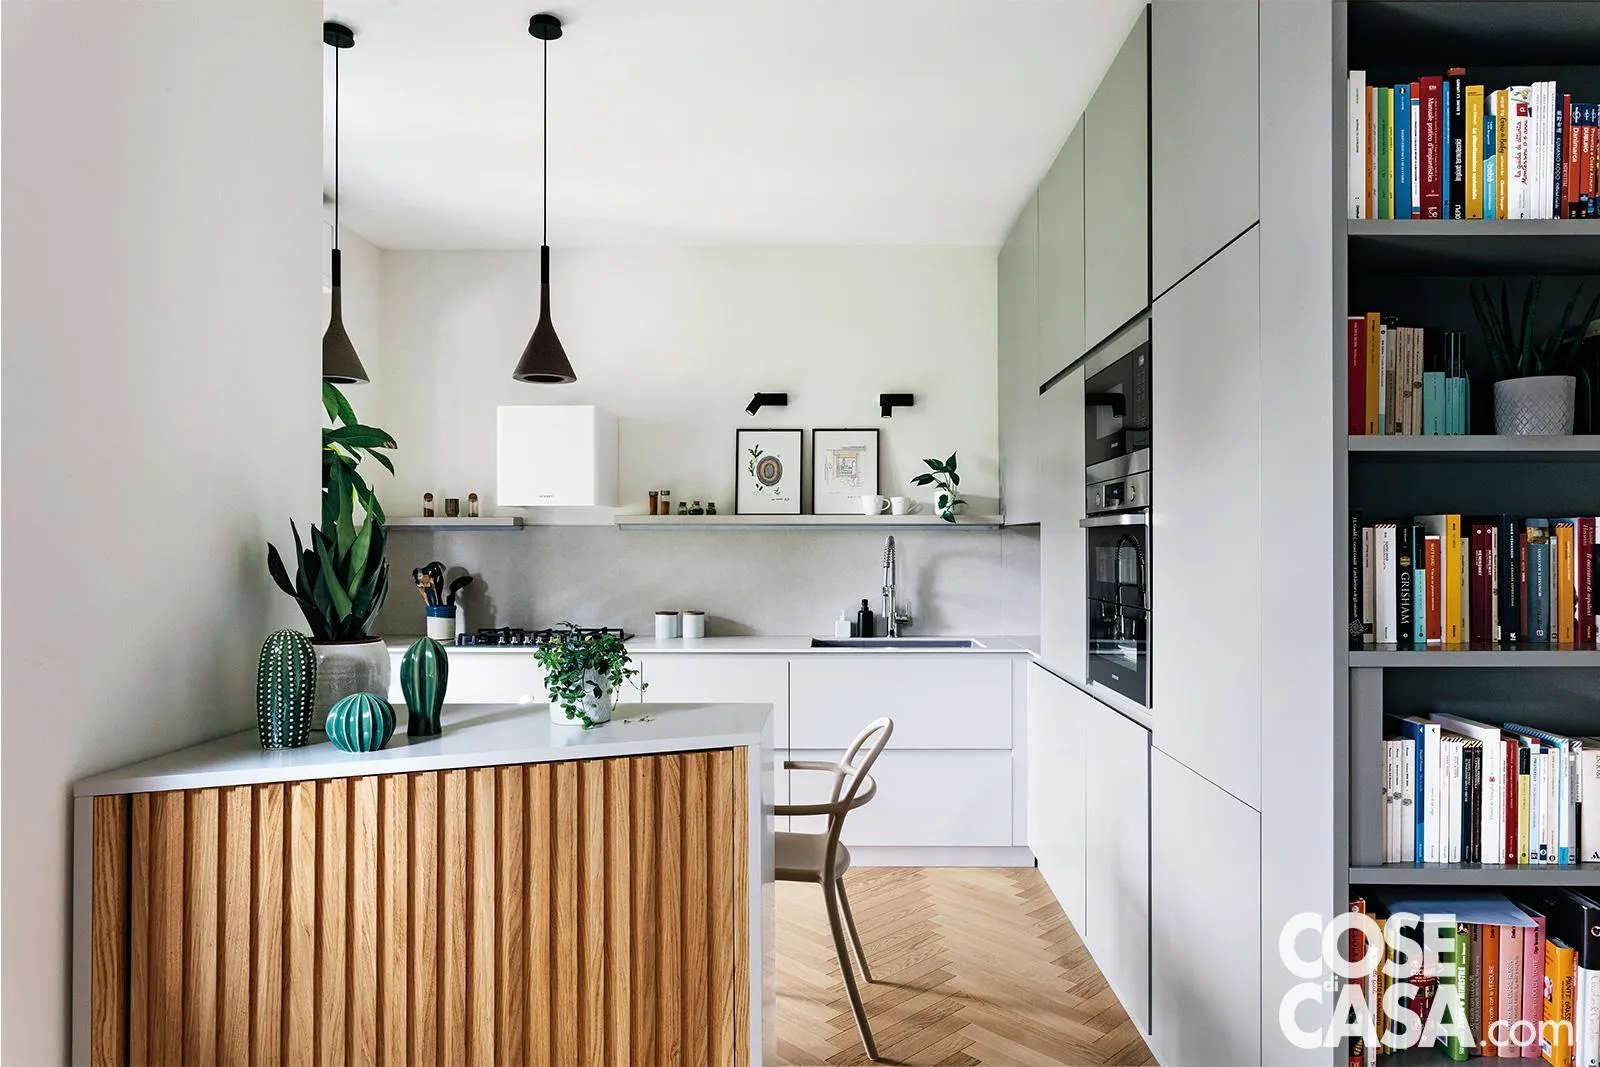 Arredare il soggiorno cucina: come separarli senza muri? 20